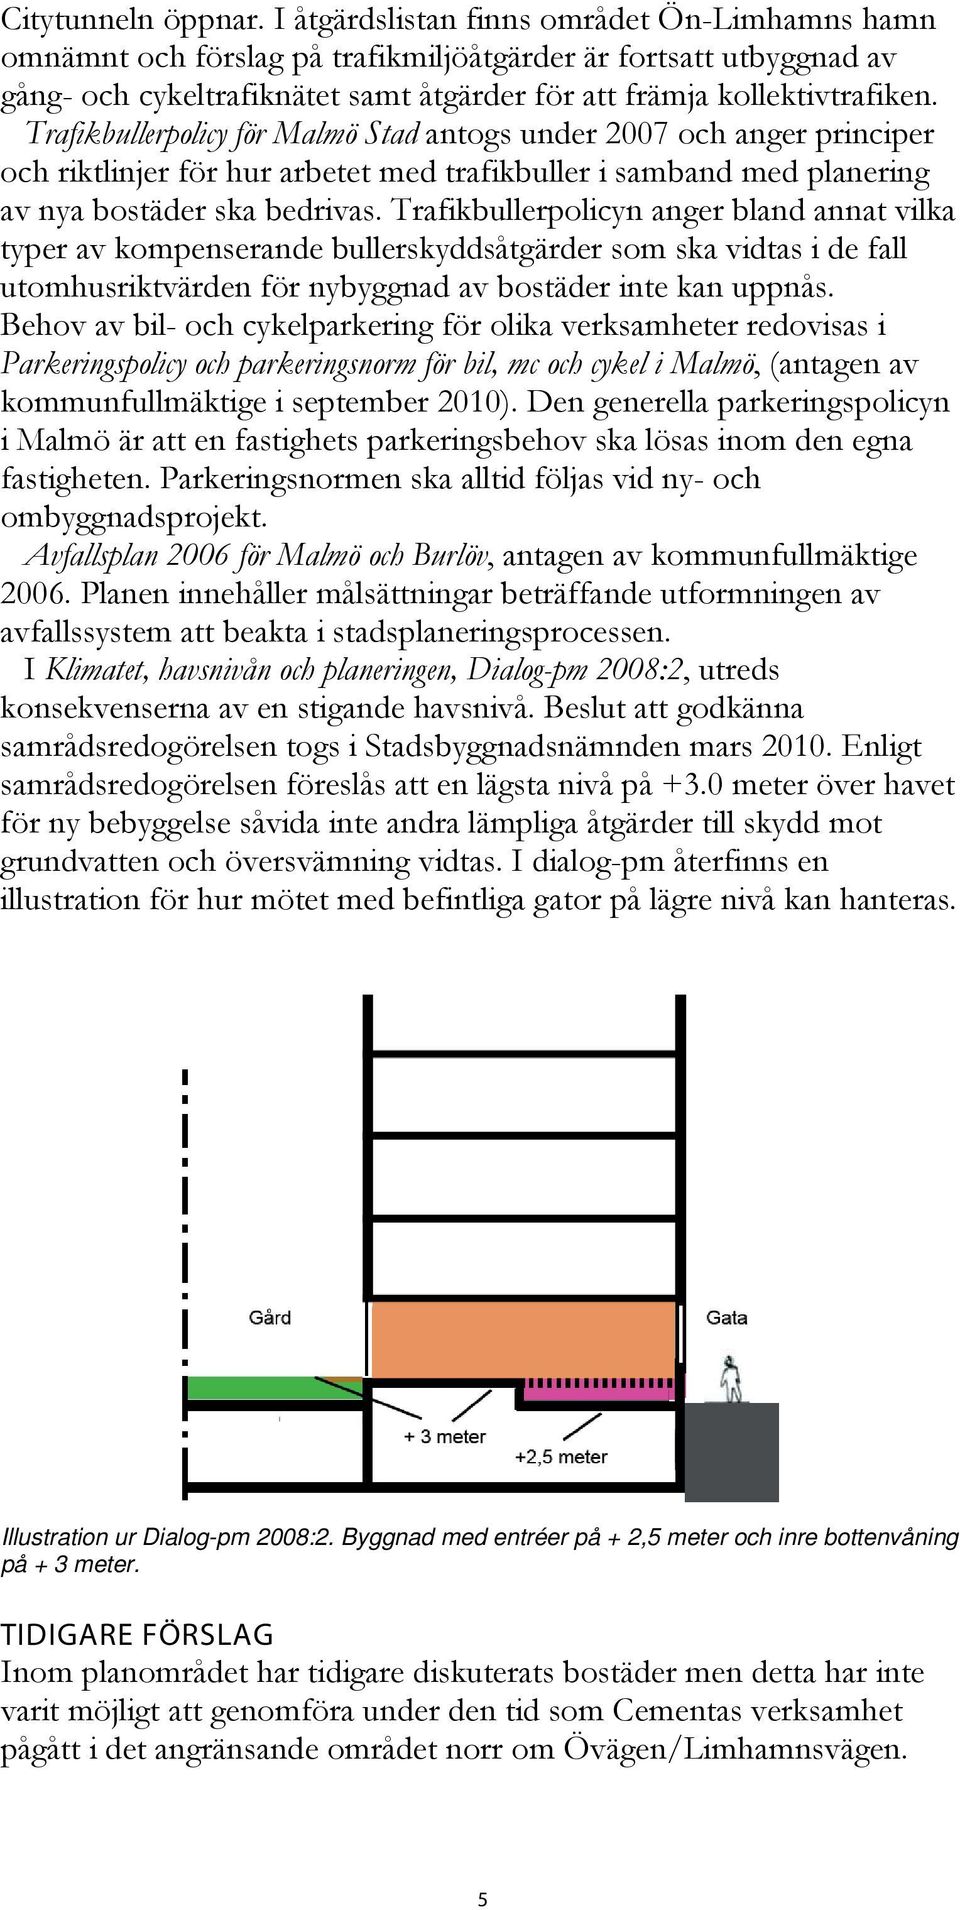 Trafikbullerpolicy för Malmö Stad antogs under 2007 och anger principer och riktlinjer för hur arbetet med trafikbuller i samband med planering av nya bostäder ska bedrivas.